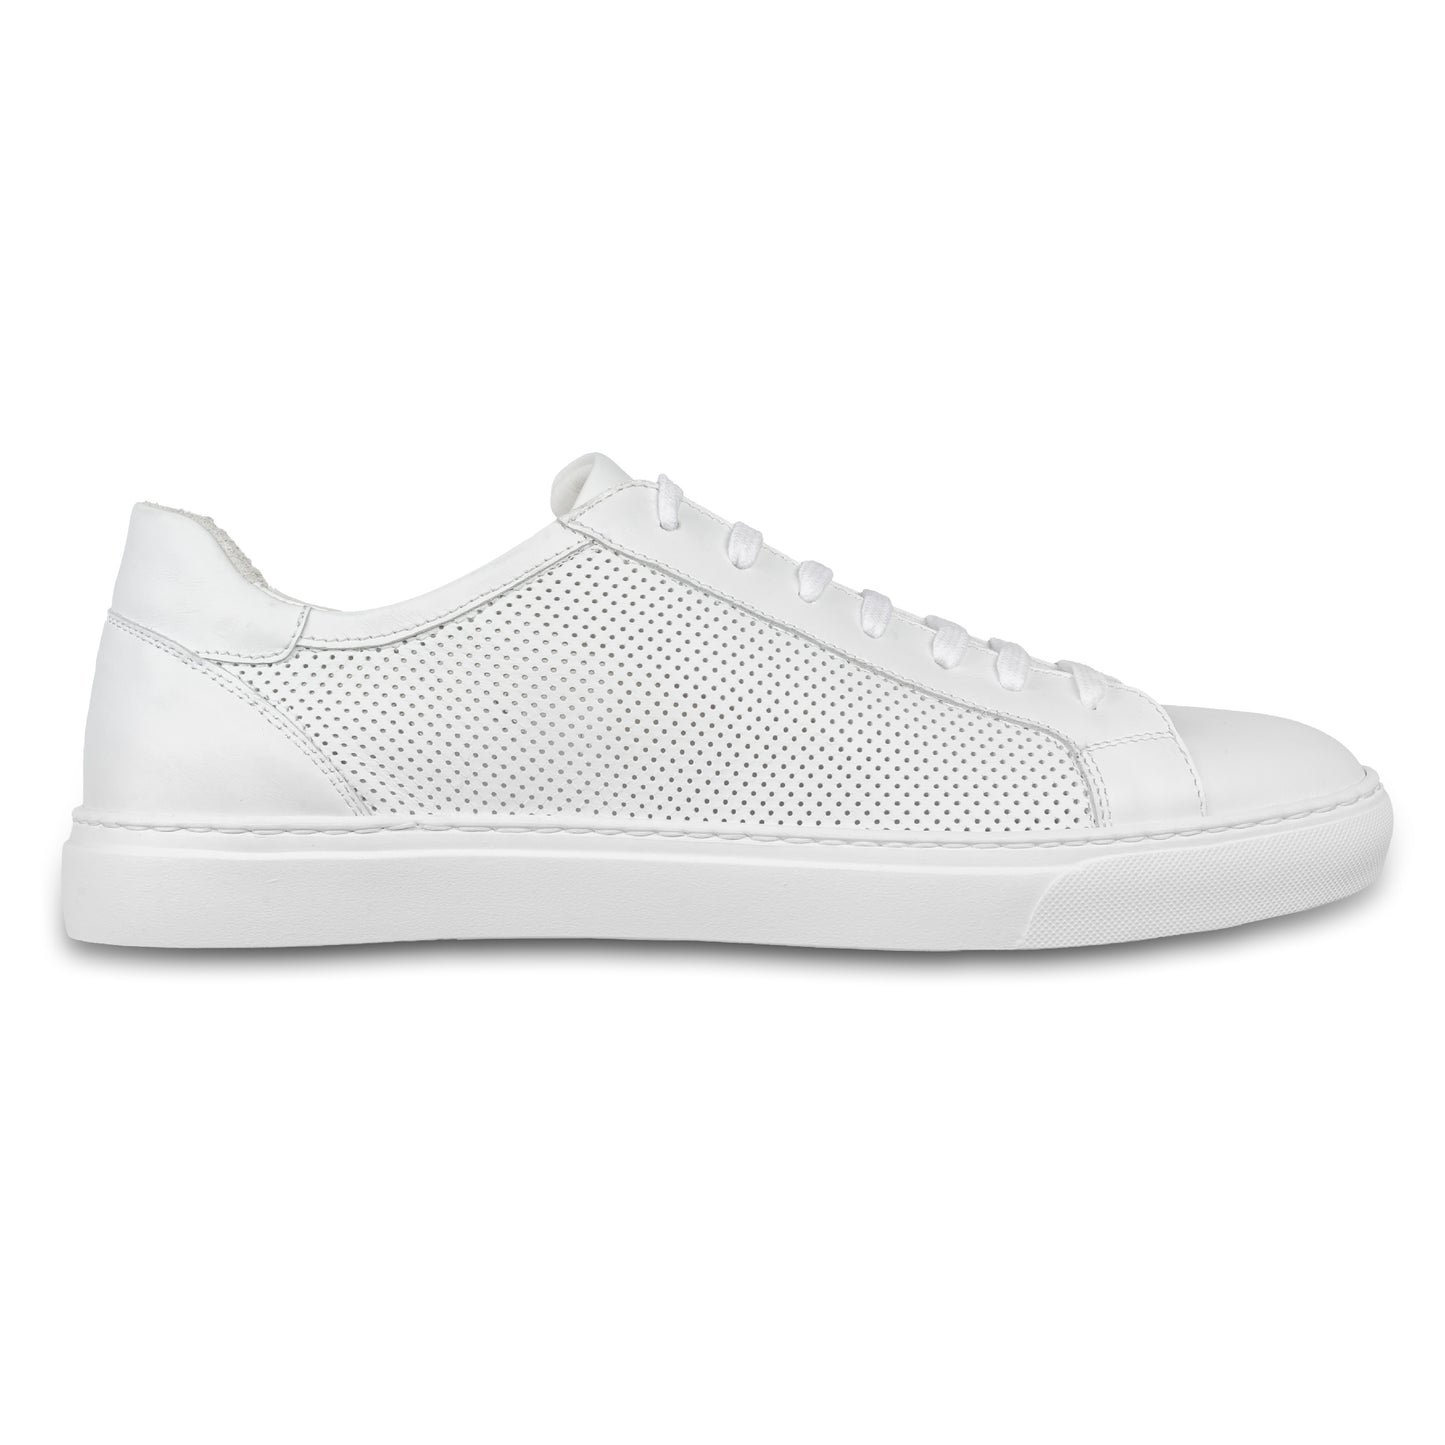 Rossano Bisconti – Italienische Herren Sneaker in weiß aus. Aus Kalbsleder sommerlich perforiert, mit weißer Sohle. Handgefertigt. Seitliche Ansicht der Außenseite rechter Schuh.